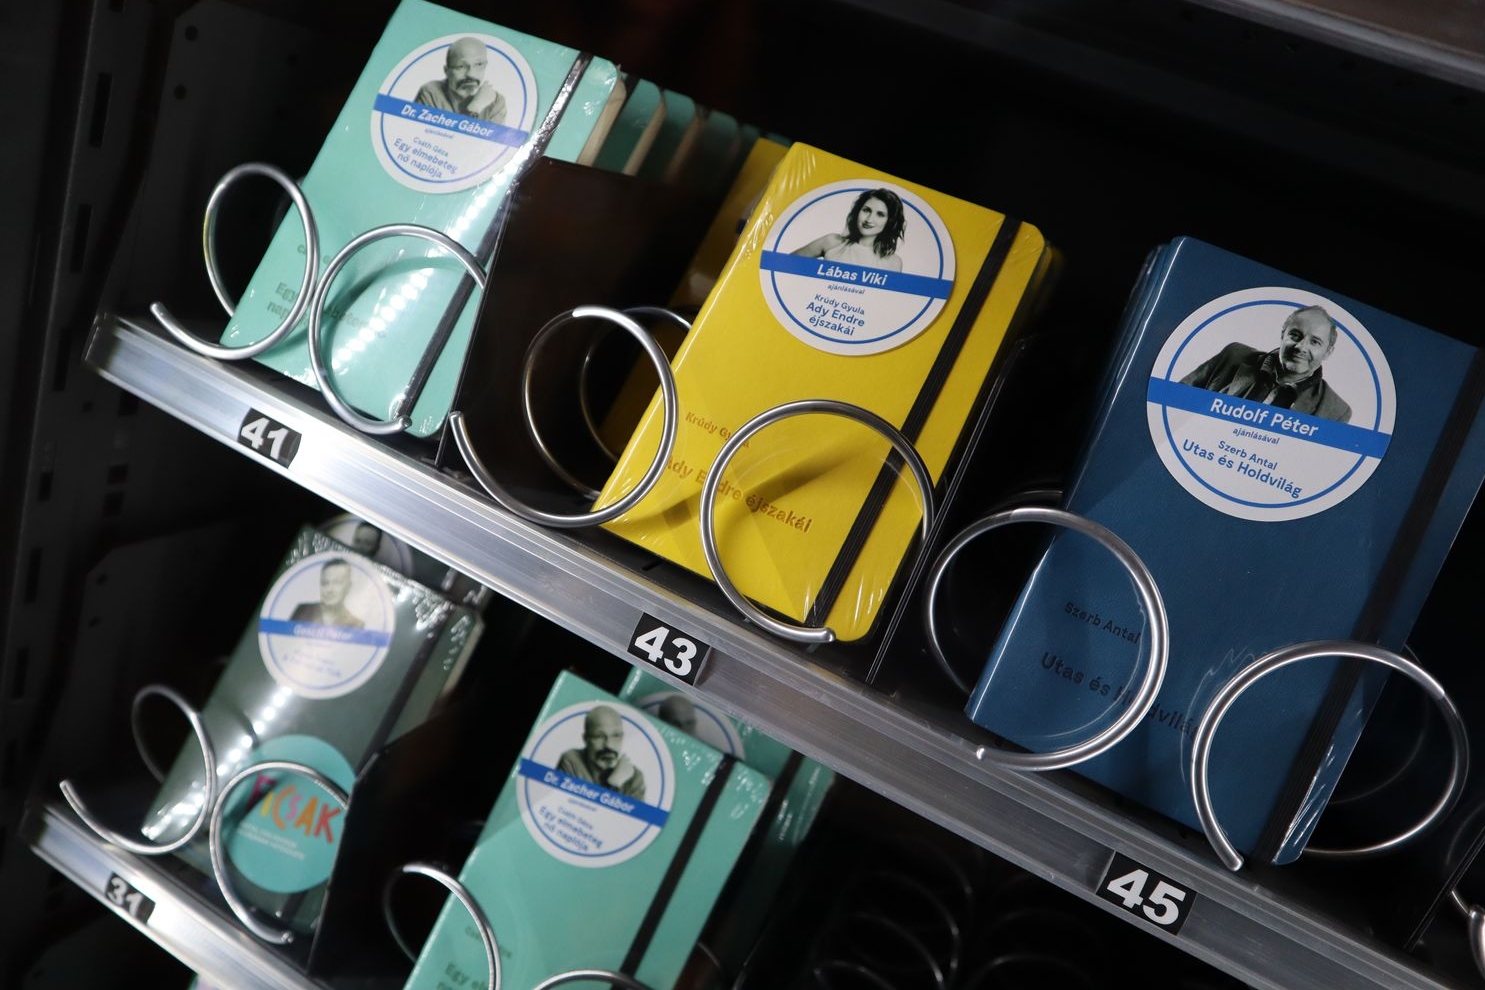 Budapešť má nové netradiční automaty. Po vhození peněz z nich vypadne knížka tak akorát do kapsy